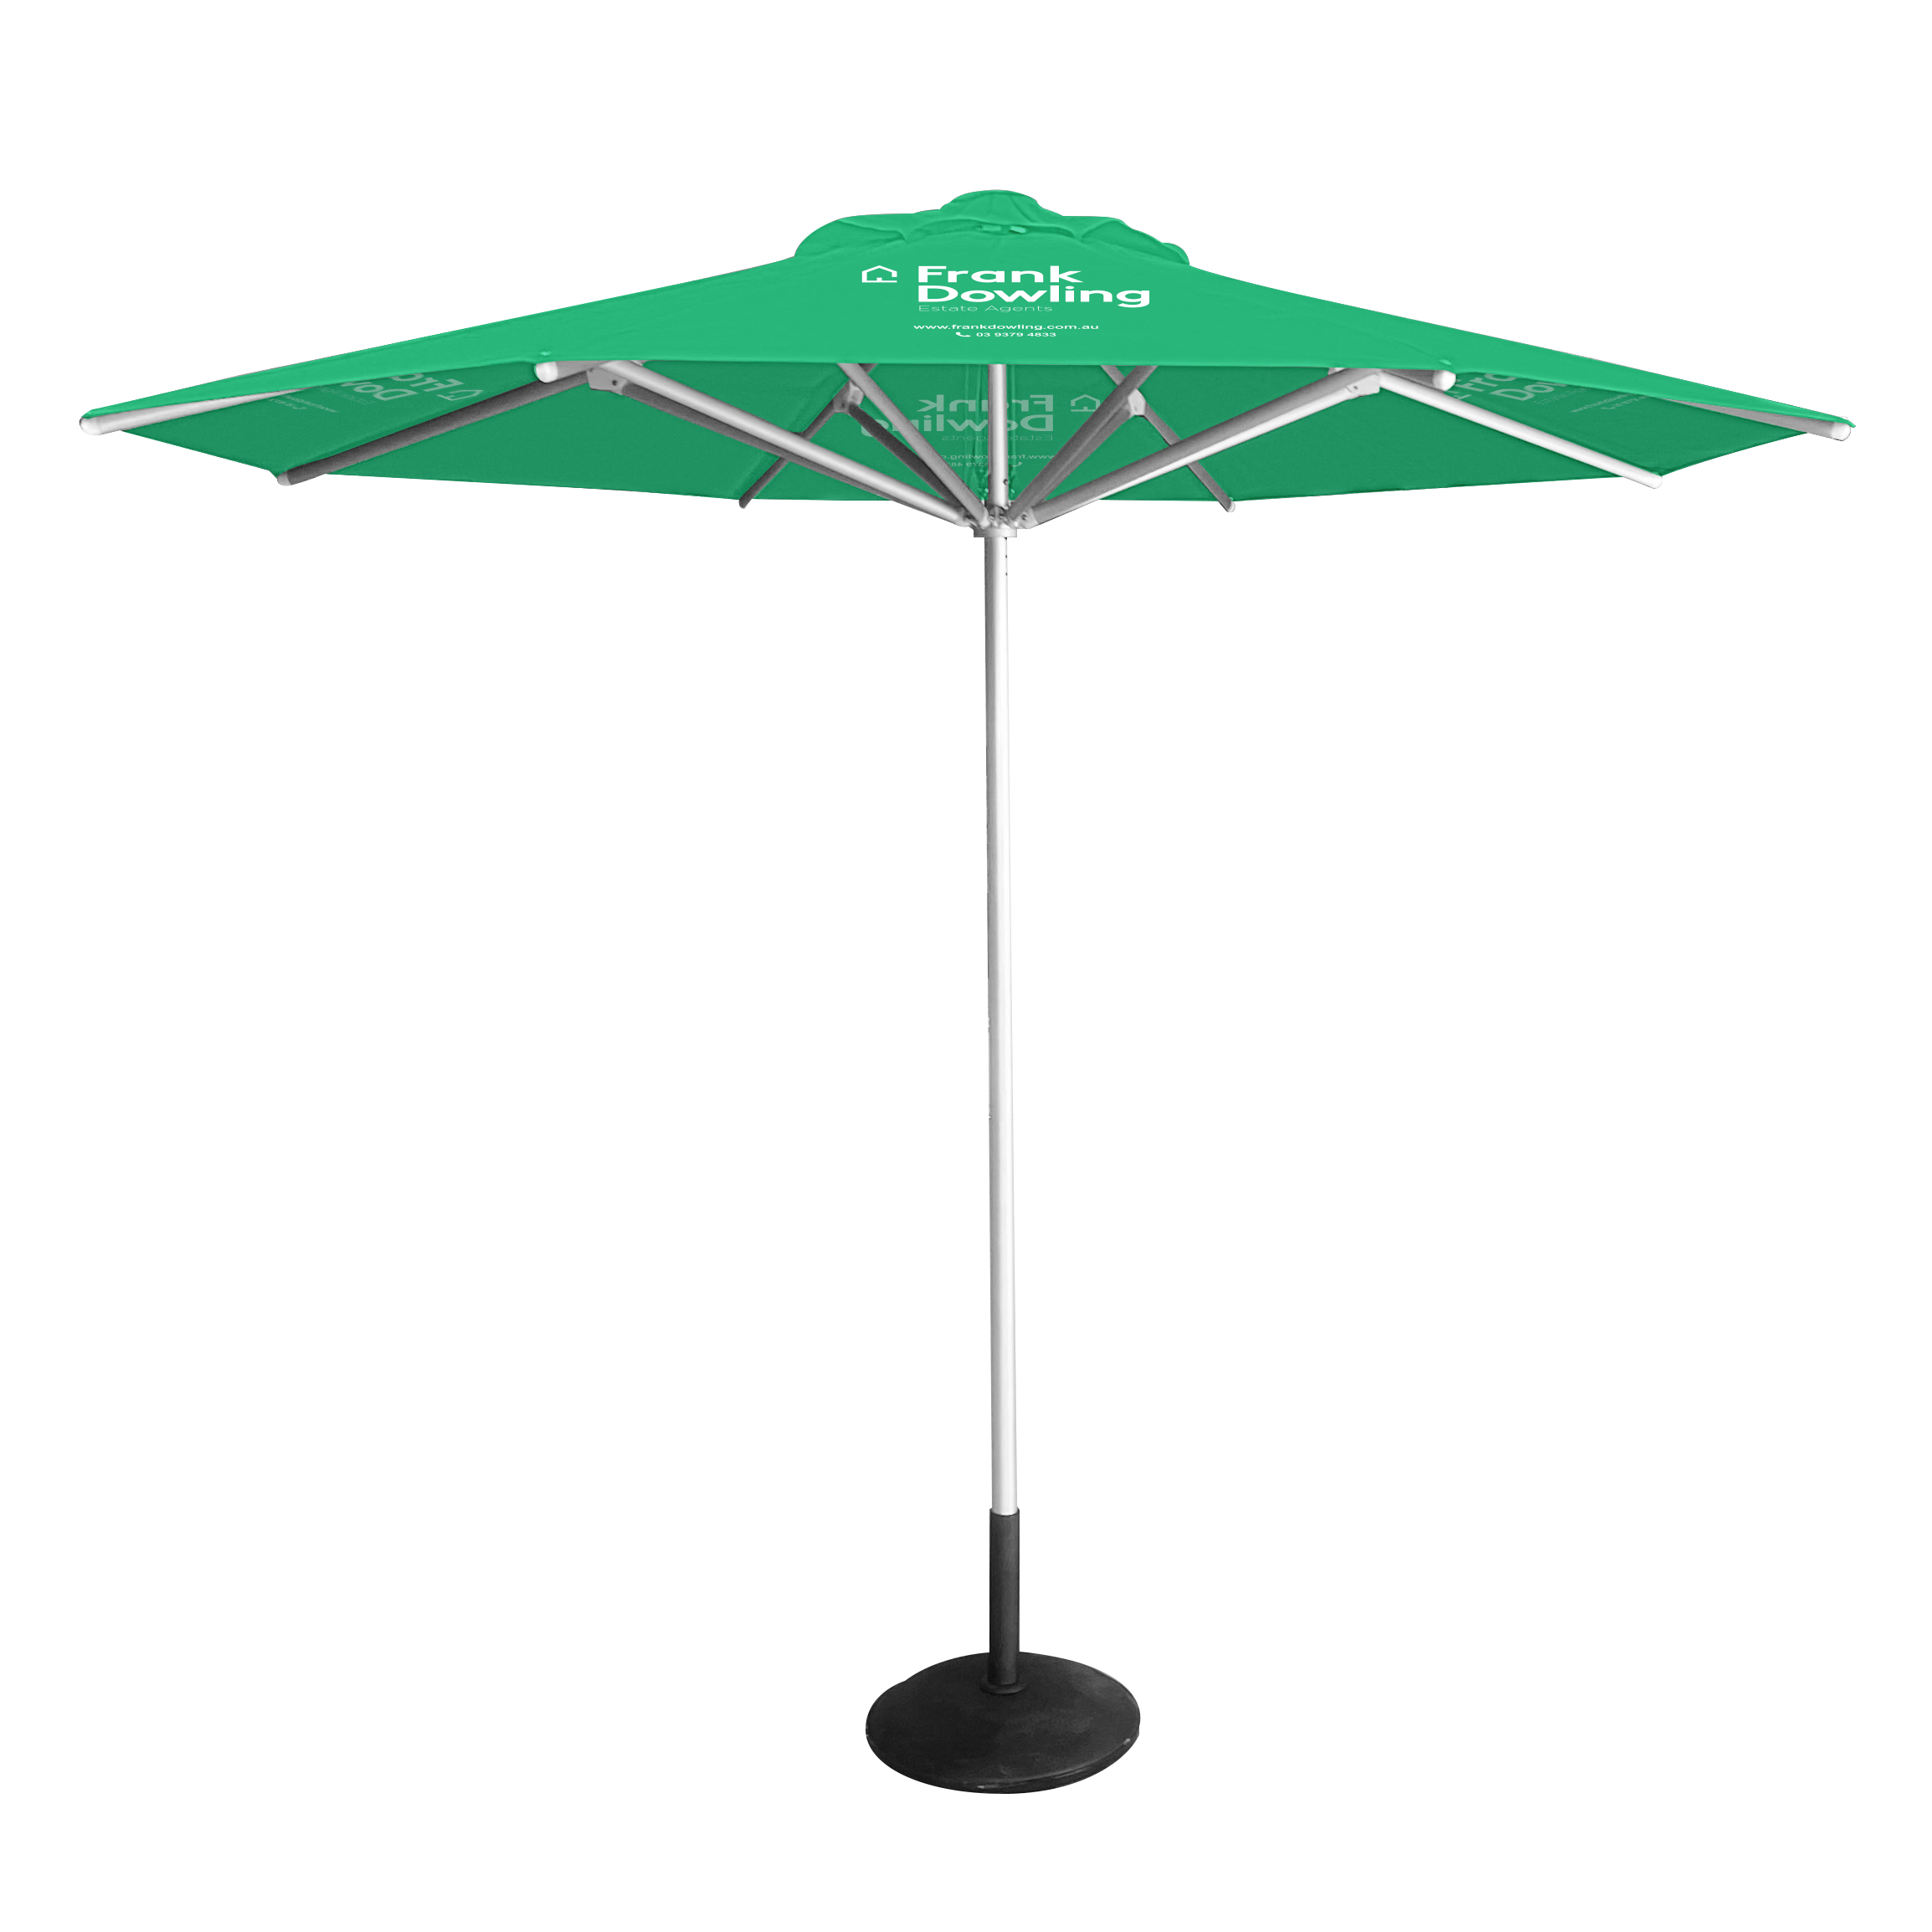 product mockups octagonal umbrella frank dowling